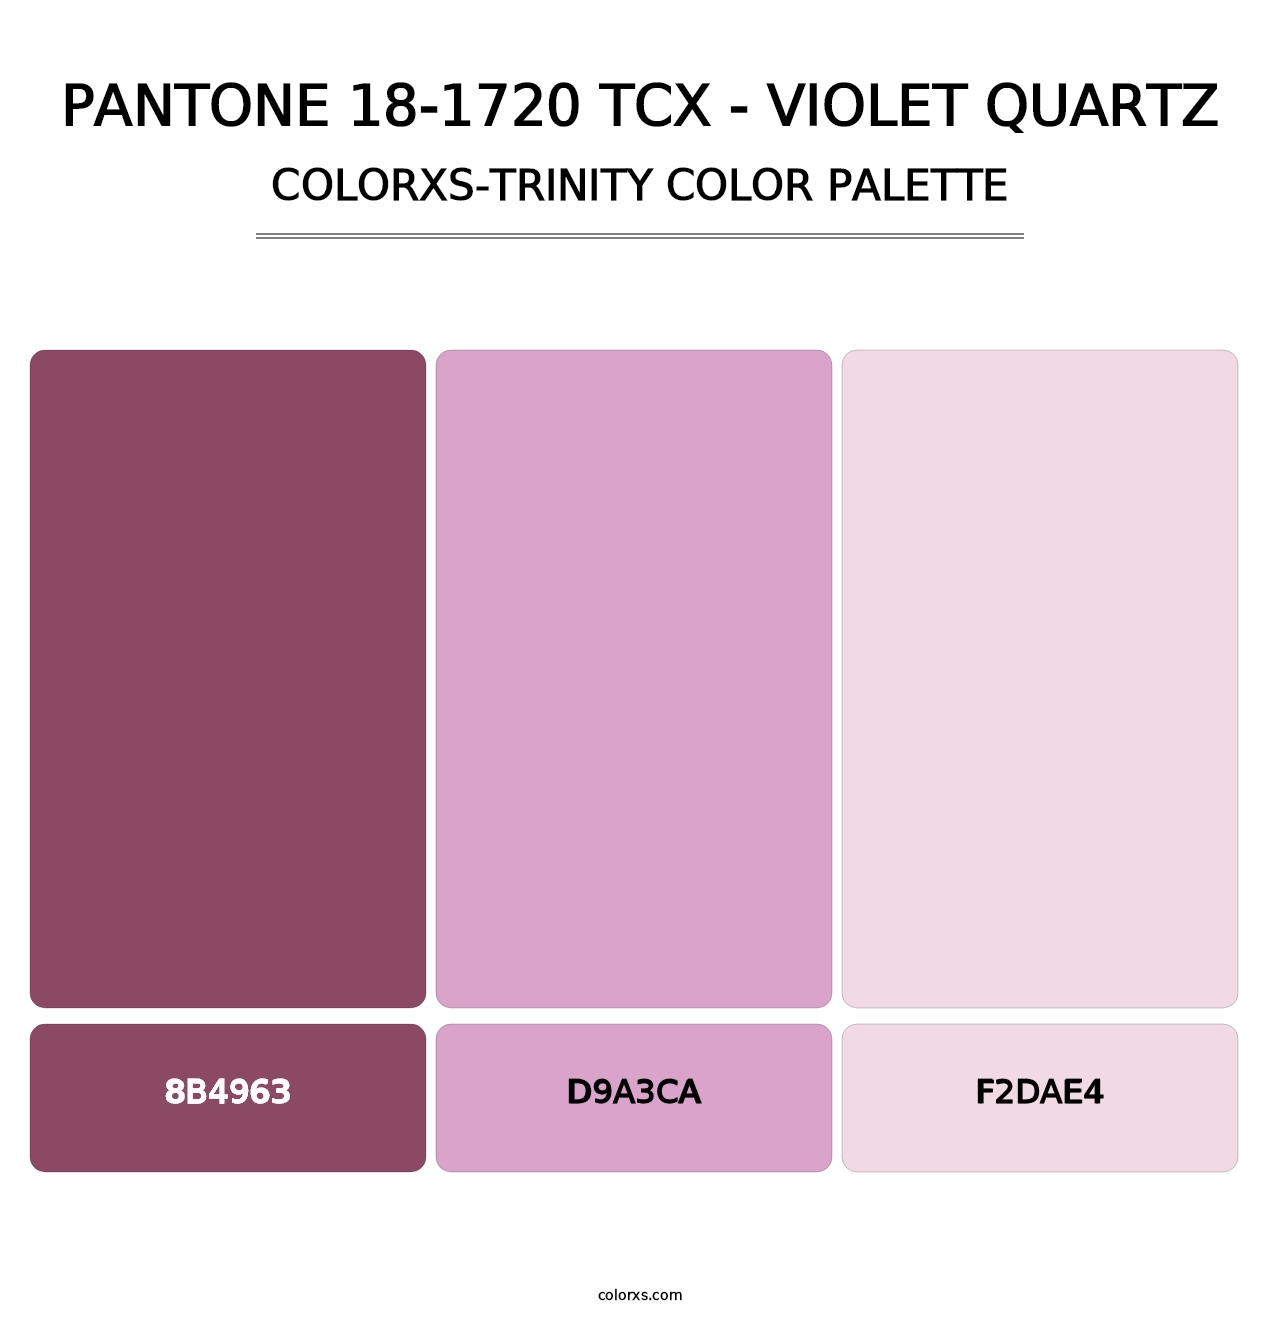 PANTONE 18-1720 TCX - Violet Quartz - Colorxs Trinity Palette